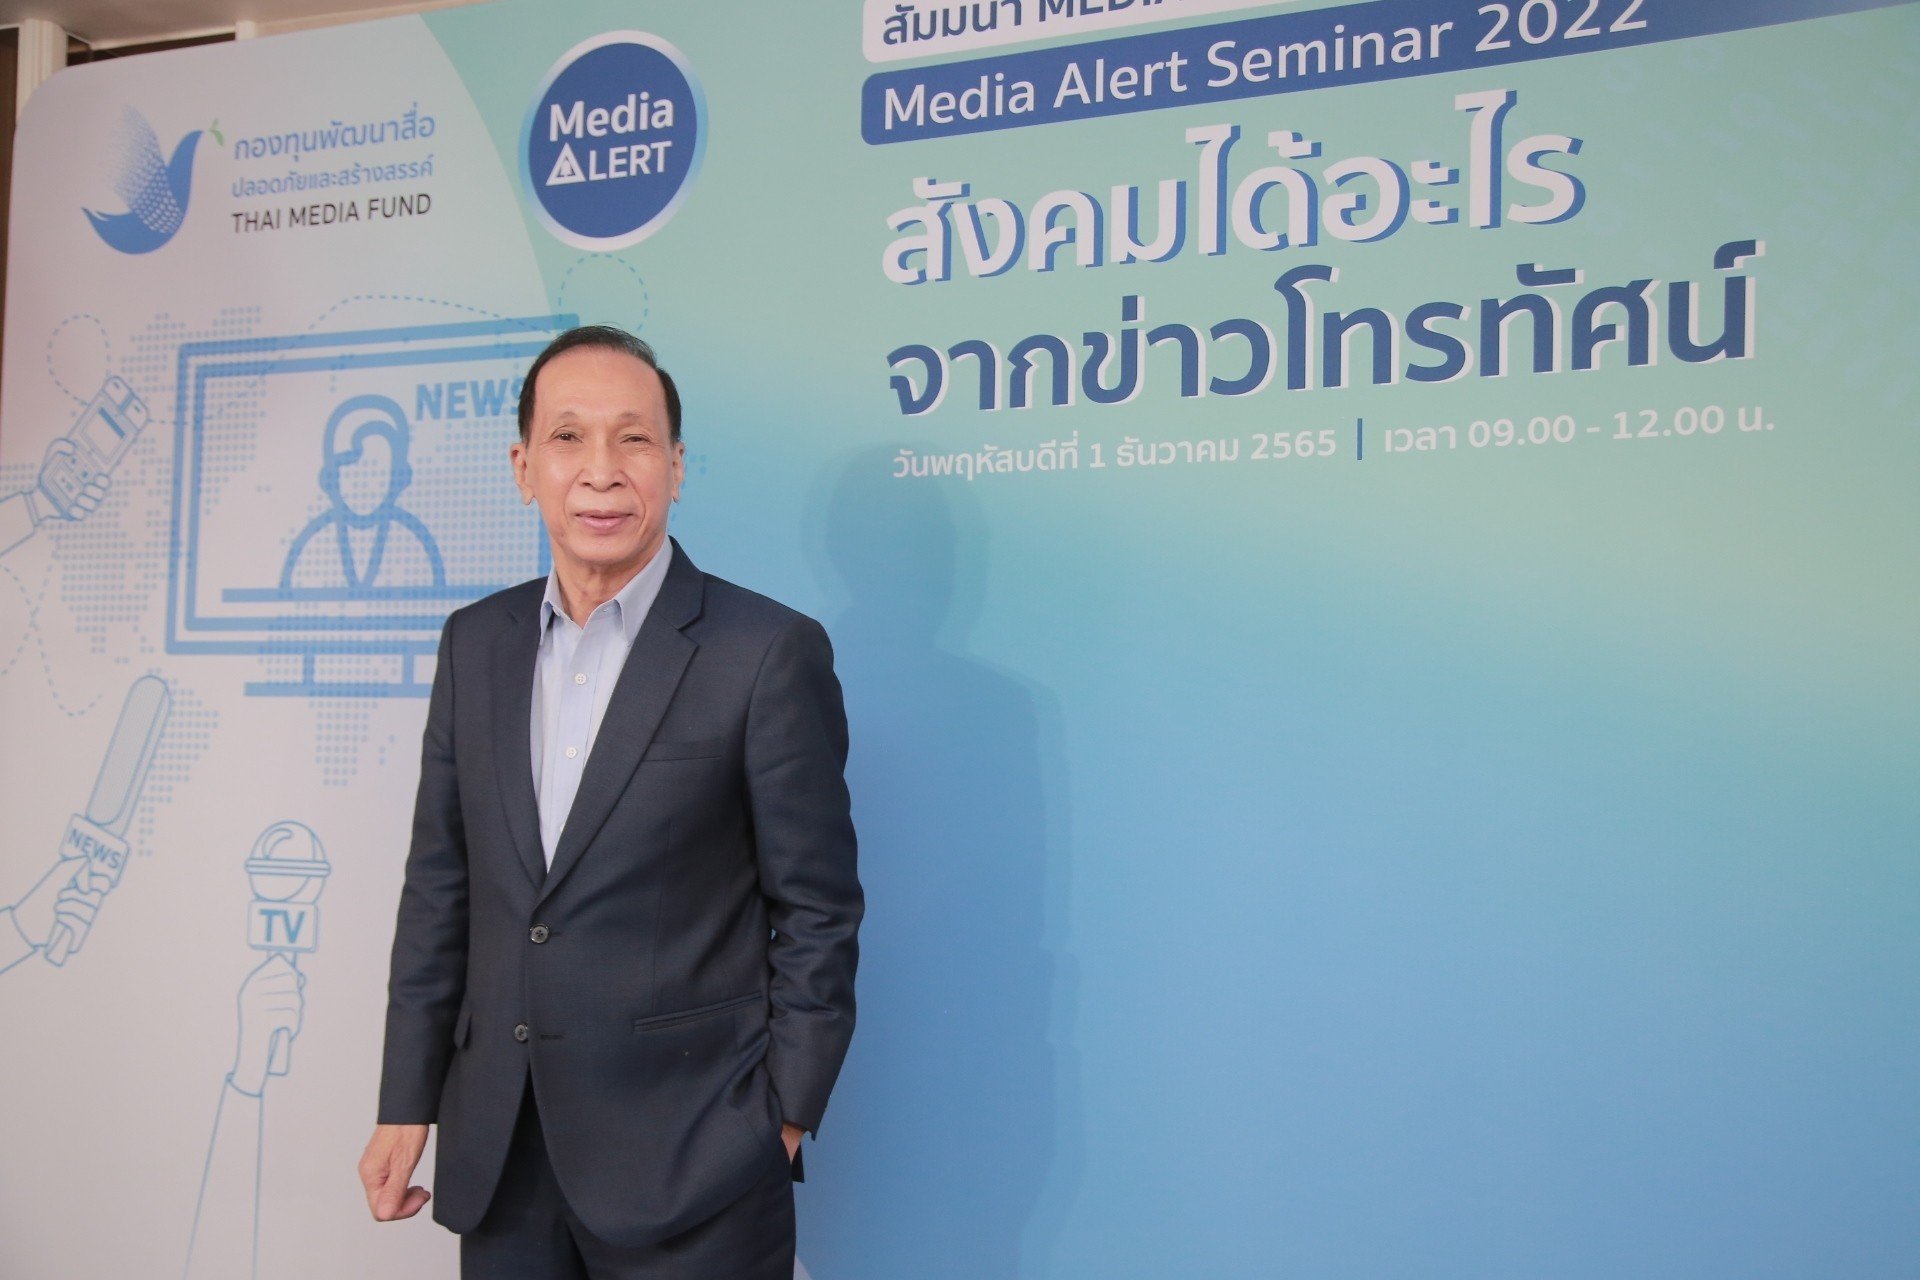 สุภาพ  คลี่ขจาย นายกสมาคมฯเข้าร่วมเสวนา "สังคมไทยได้อะไรจากข่าวโทรทัศน์"